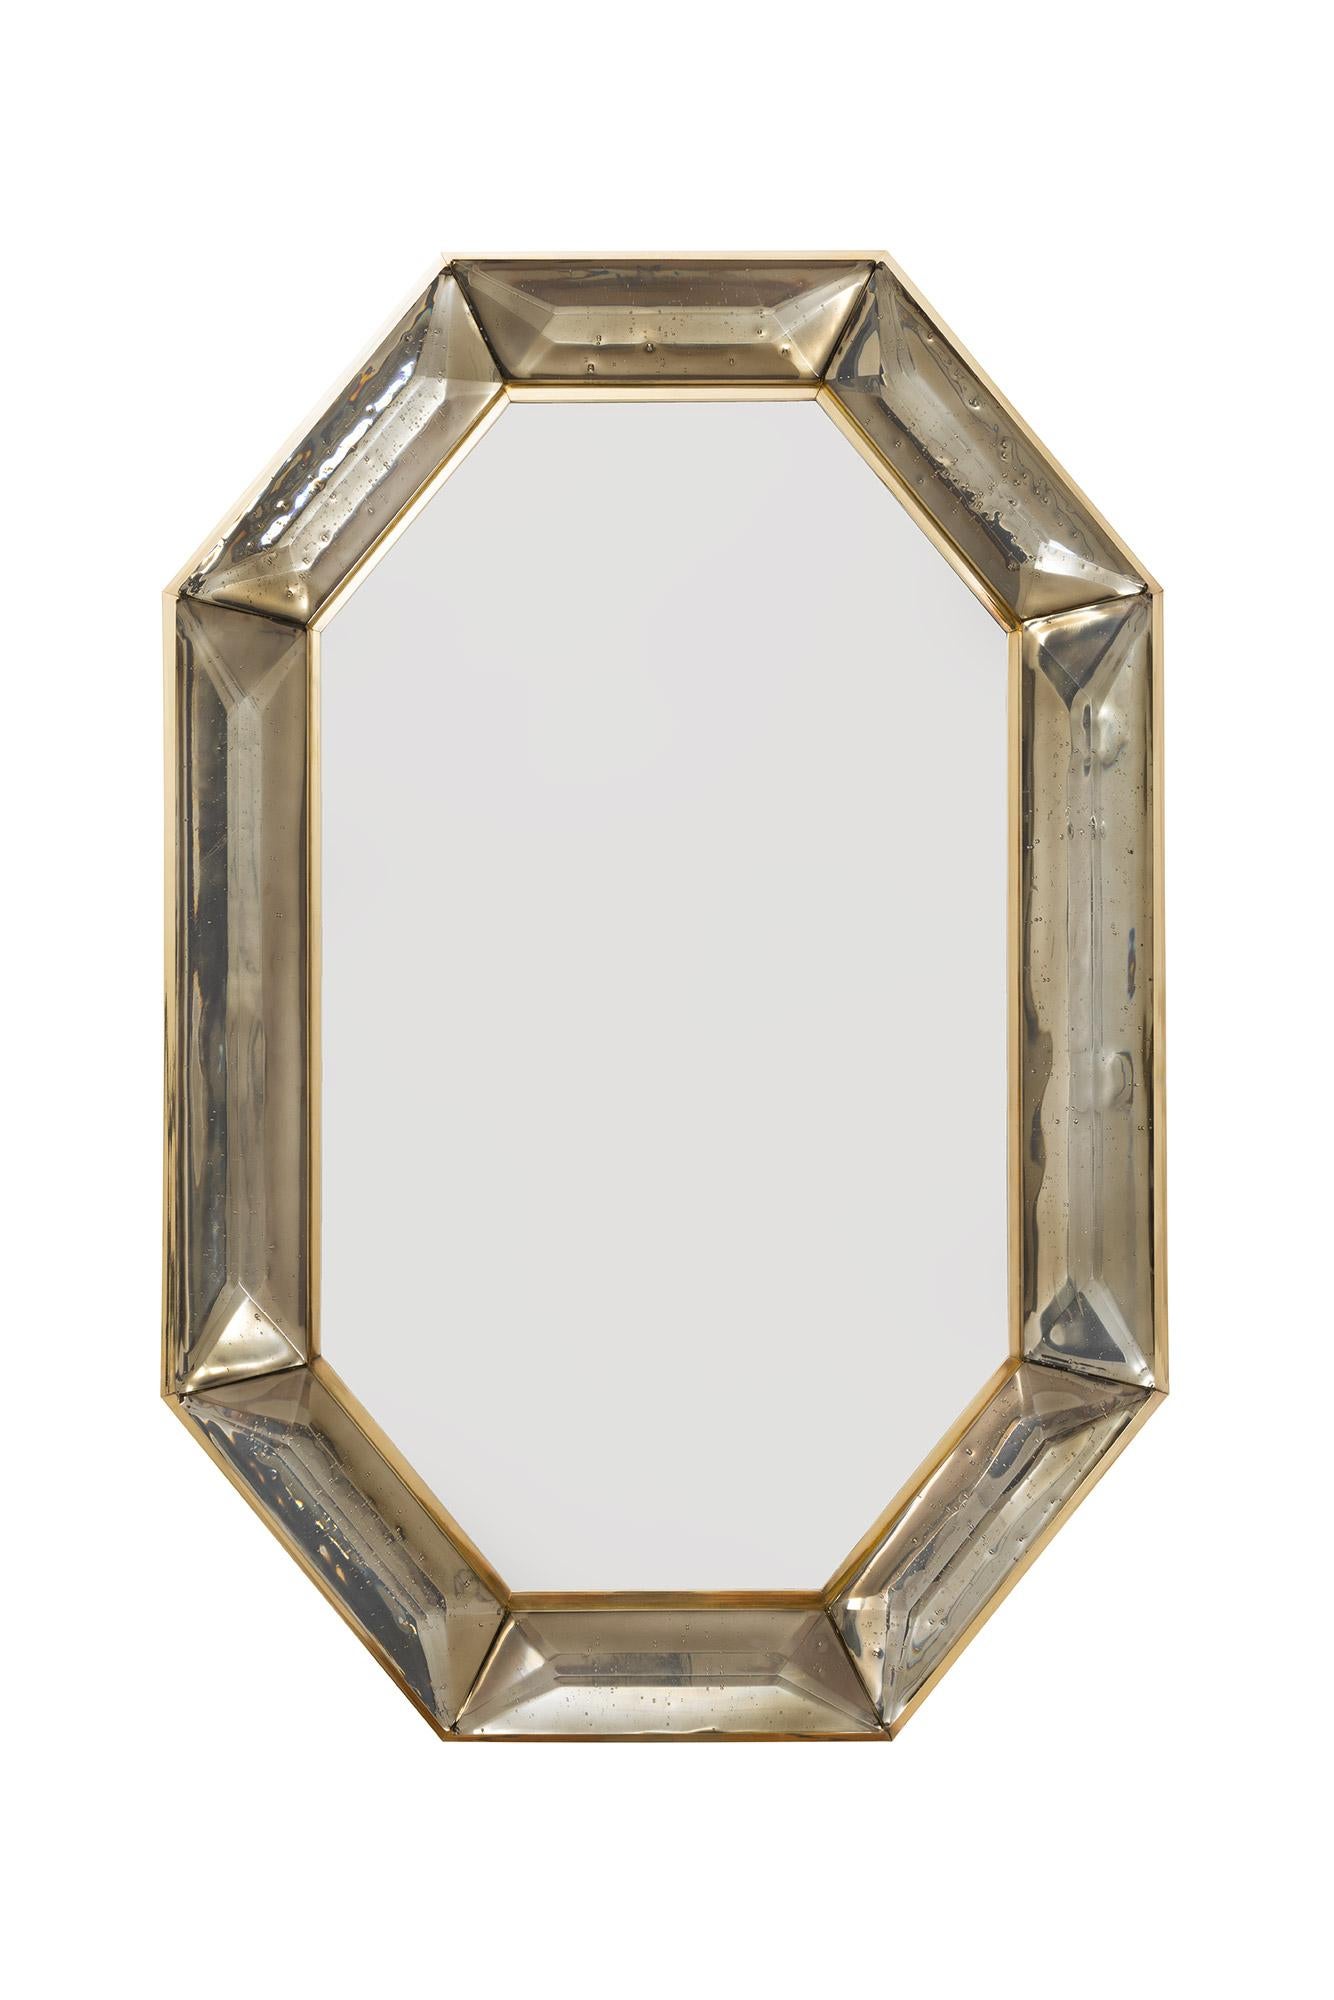 Achteckiger Spiegel aus geräuchertem Murano-Glas nach Maß, vorrätig
 Lebendiger und intensiver rauchfarbener oder bronzefarbener Glasstein mit natürlich vorkommenden Lufteinschlüssen 
 Hochglanzpoliertes Facettenmuster
 Messing-Galerie